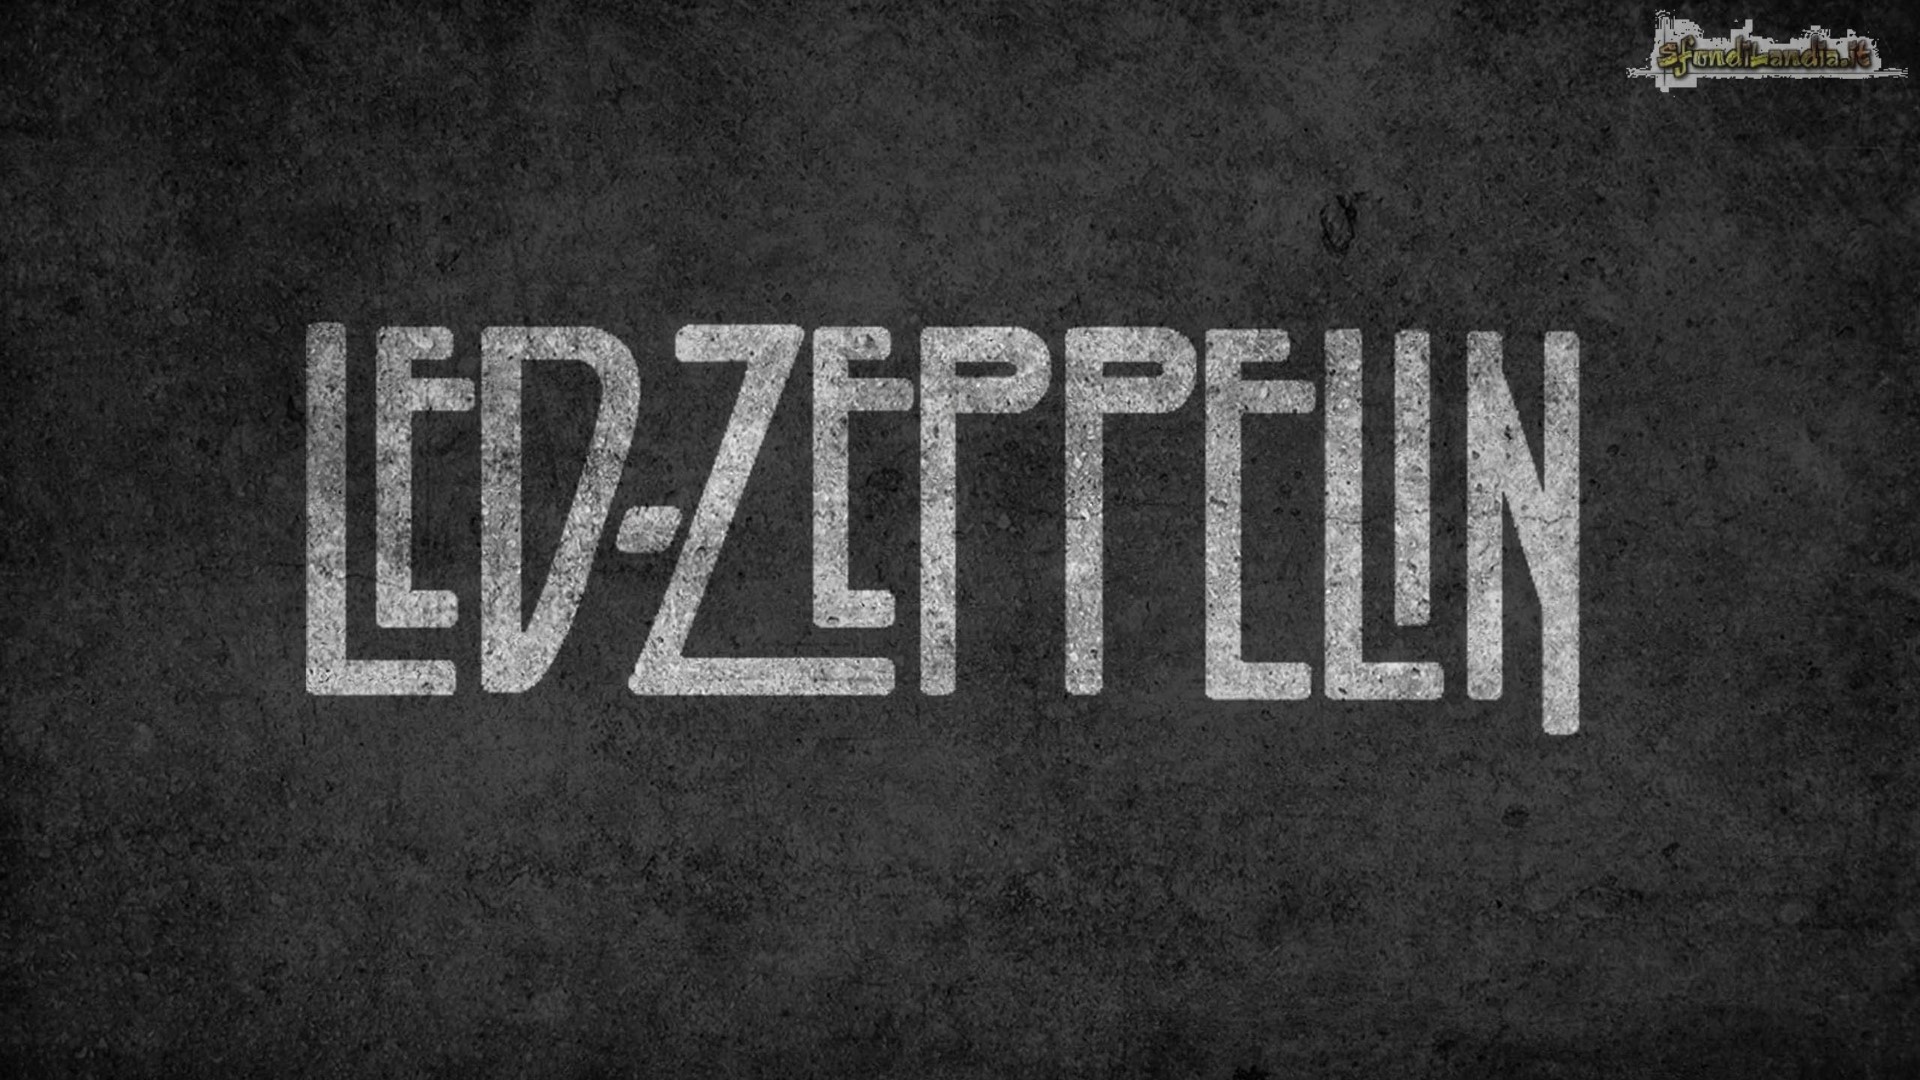 Led Zeppelin Logo